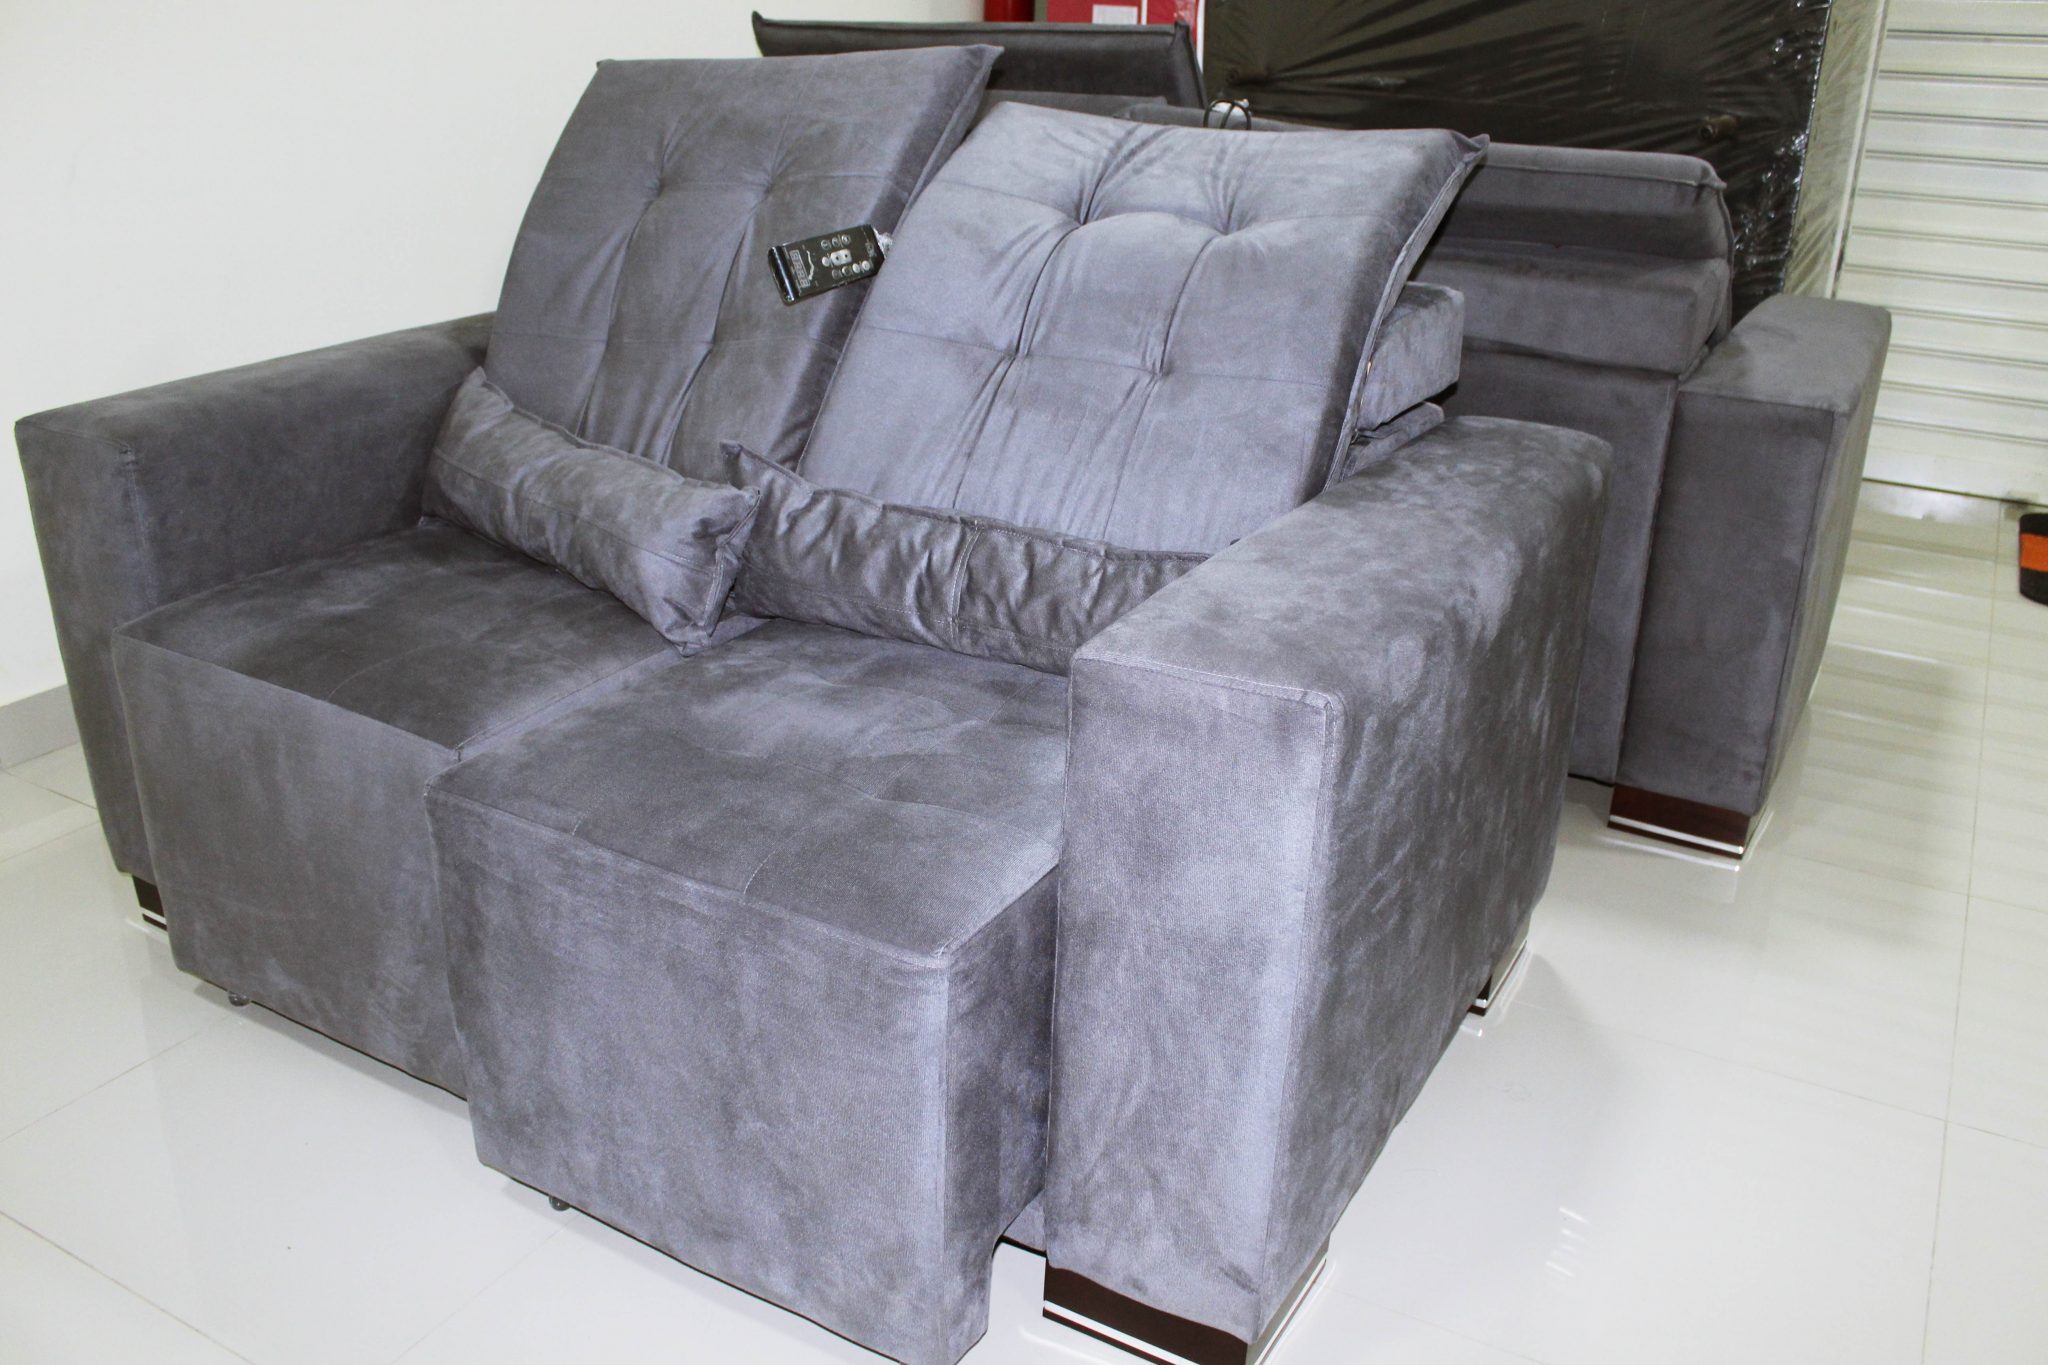 COMODIDADE: PortoBello oferece sofás reclináveis com preços de inauguração;  confira - Fala Genefax